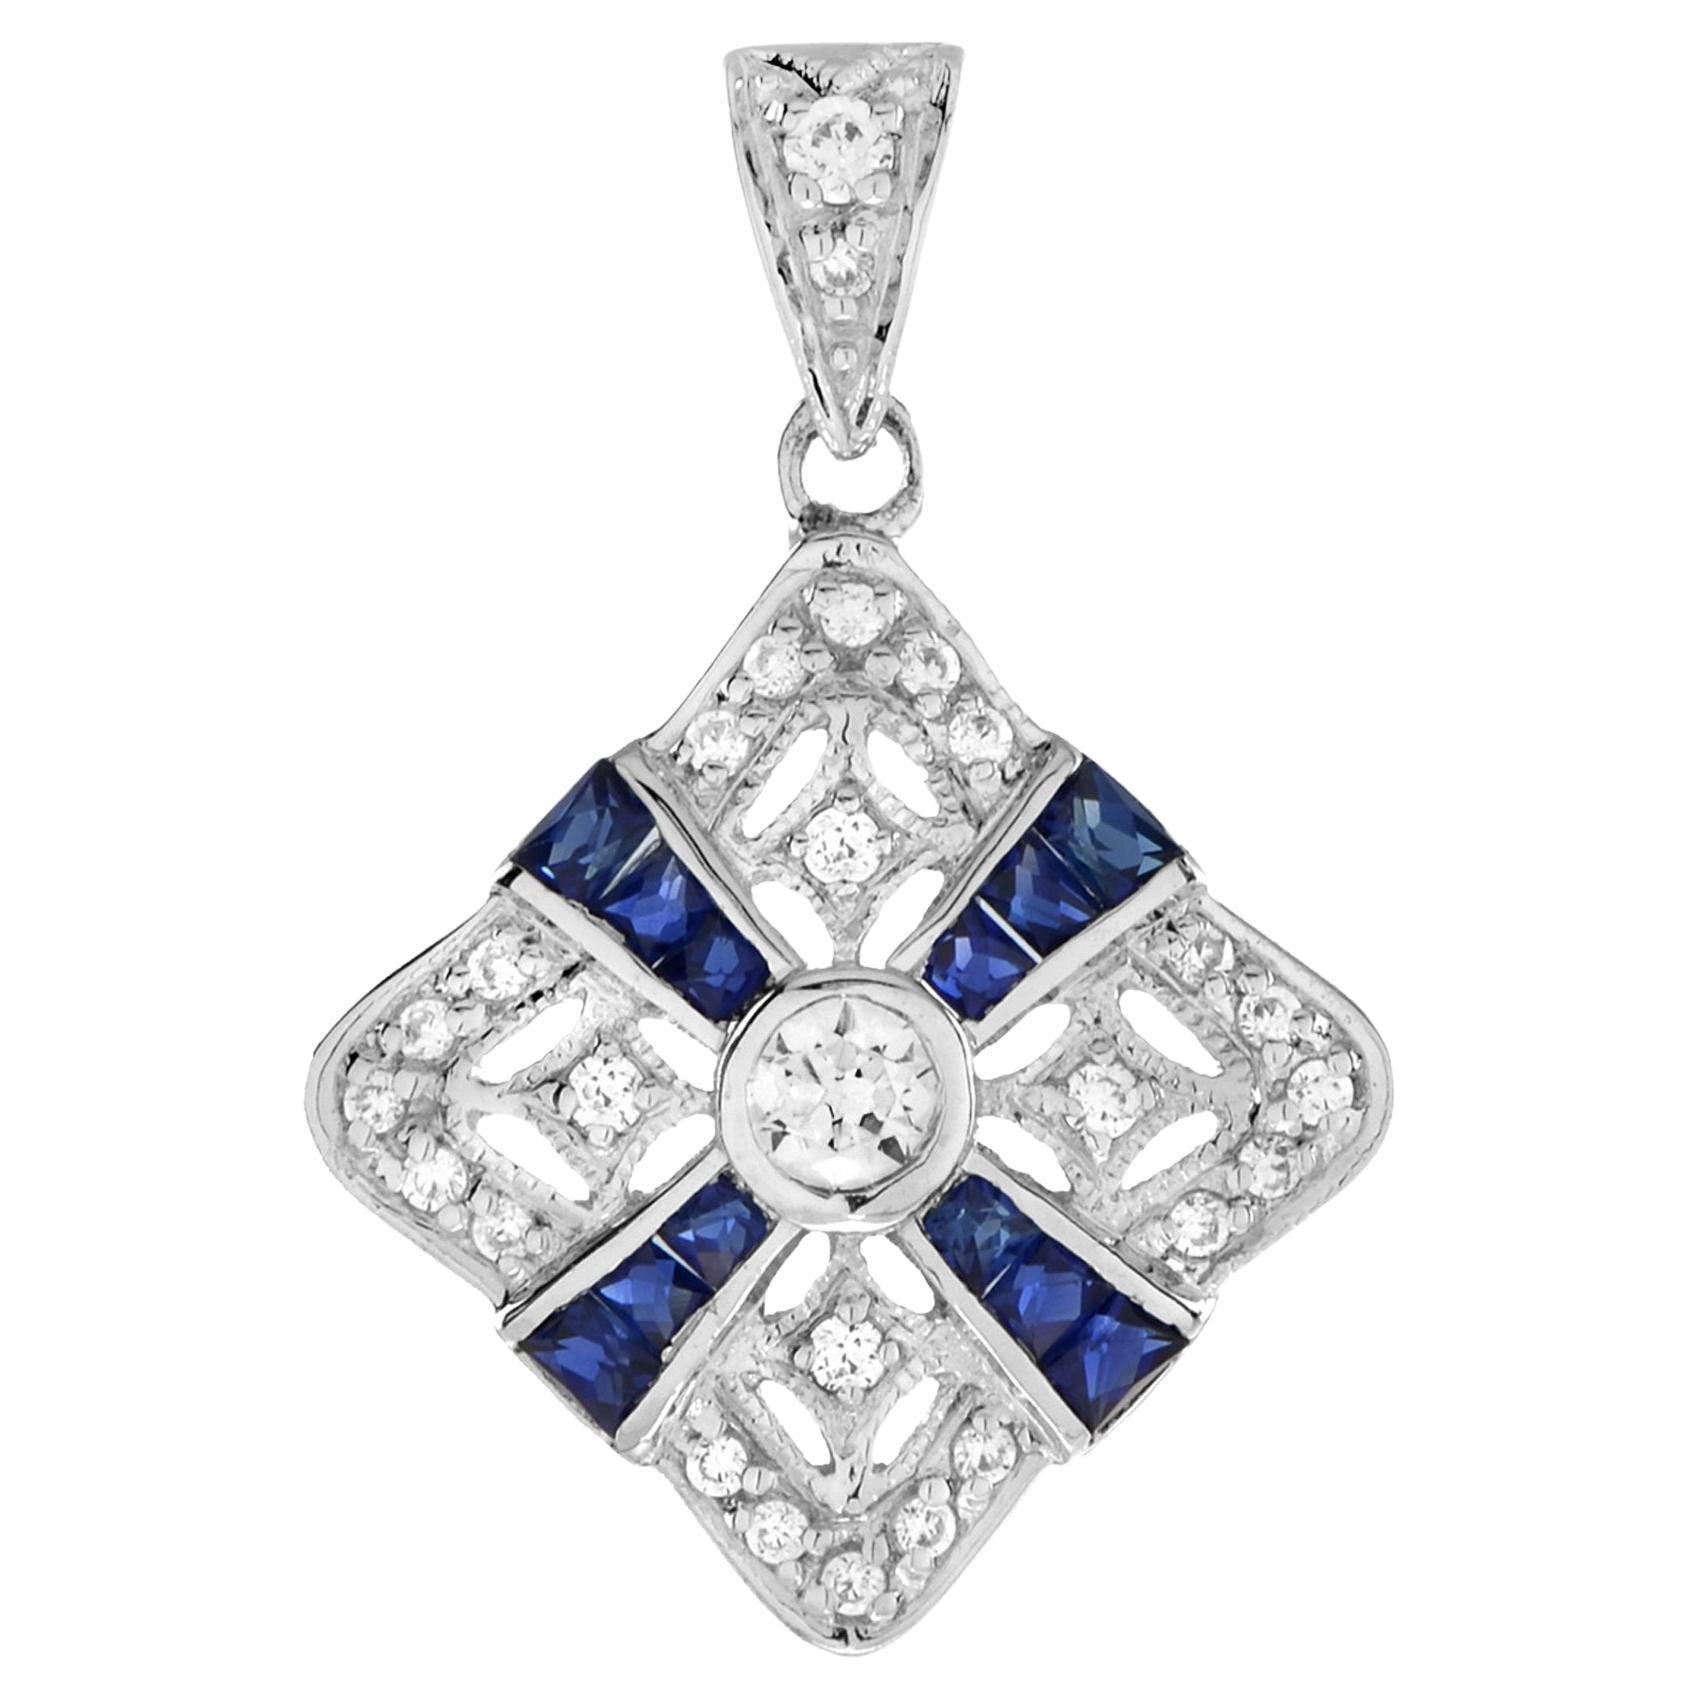 Art Deco Design Diamond and Sapphire Pendant in 14K White Gold